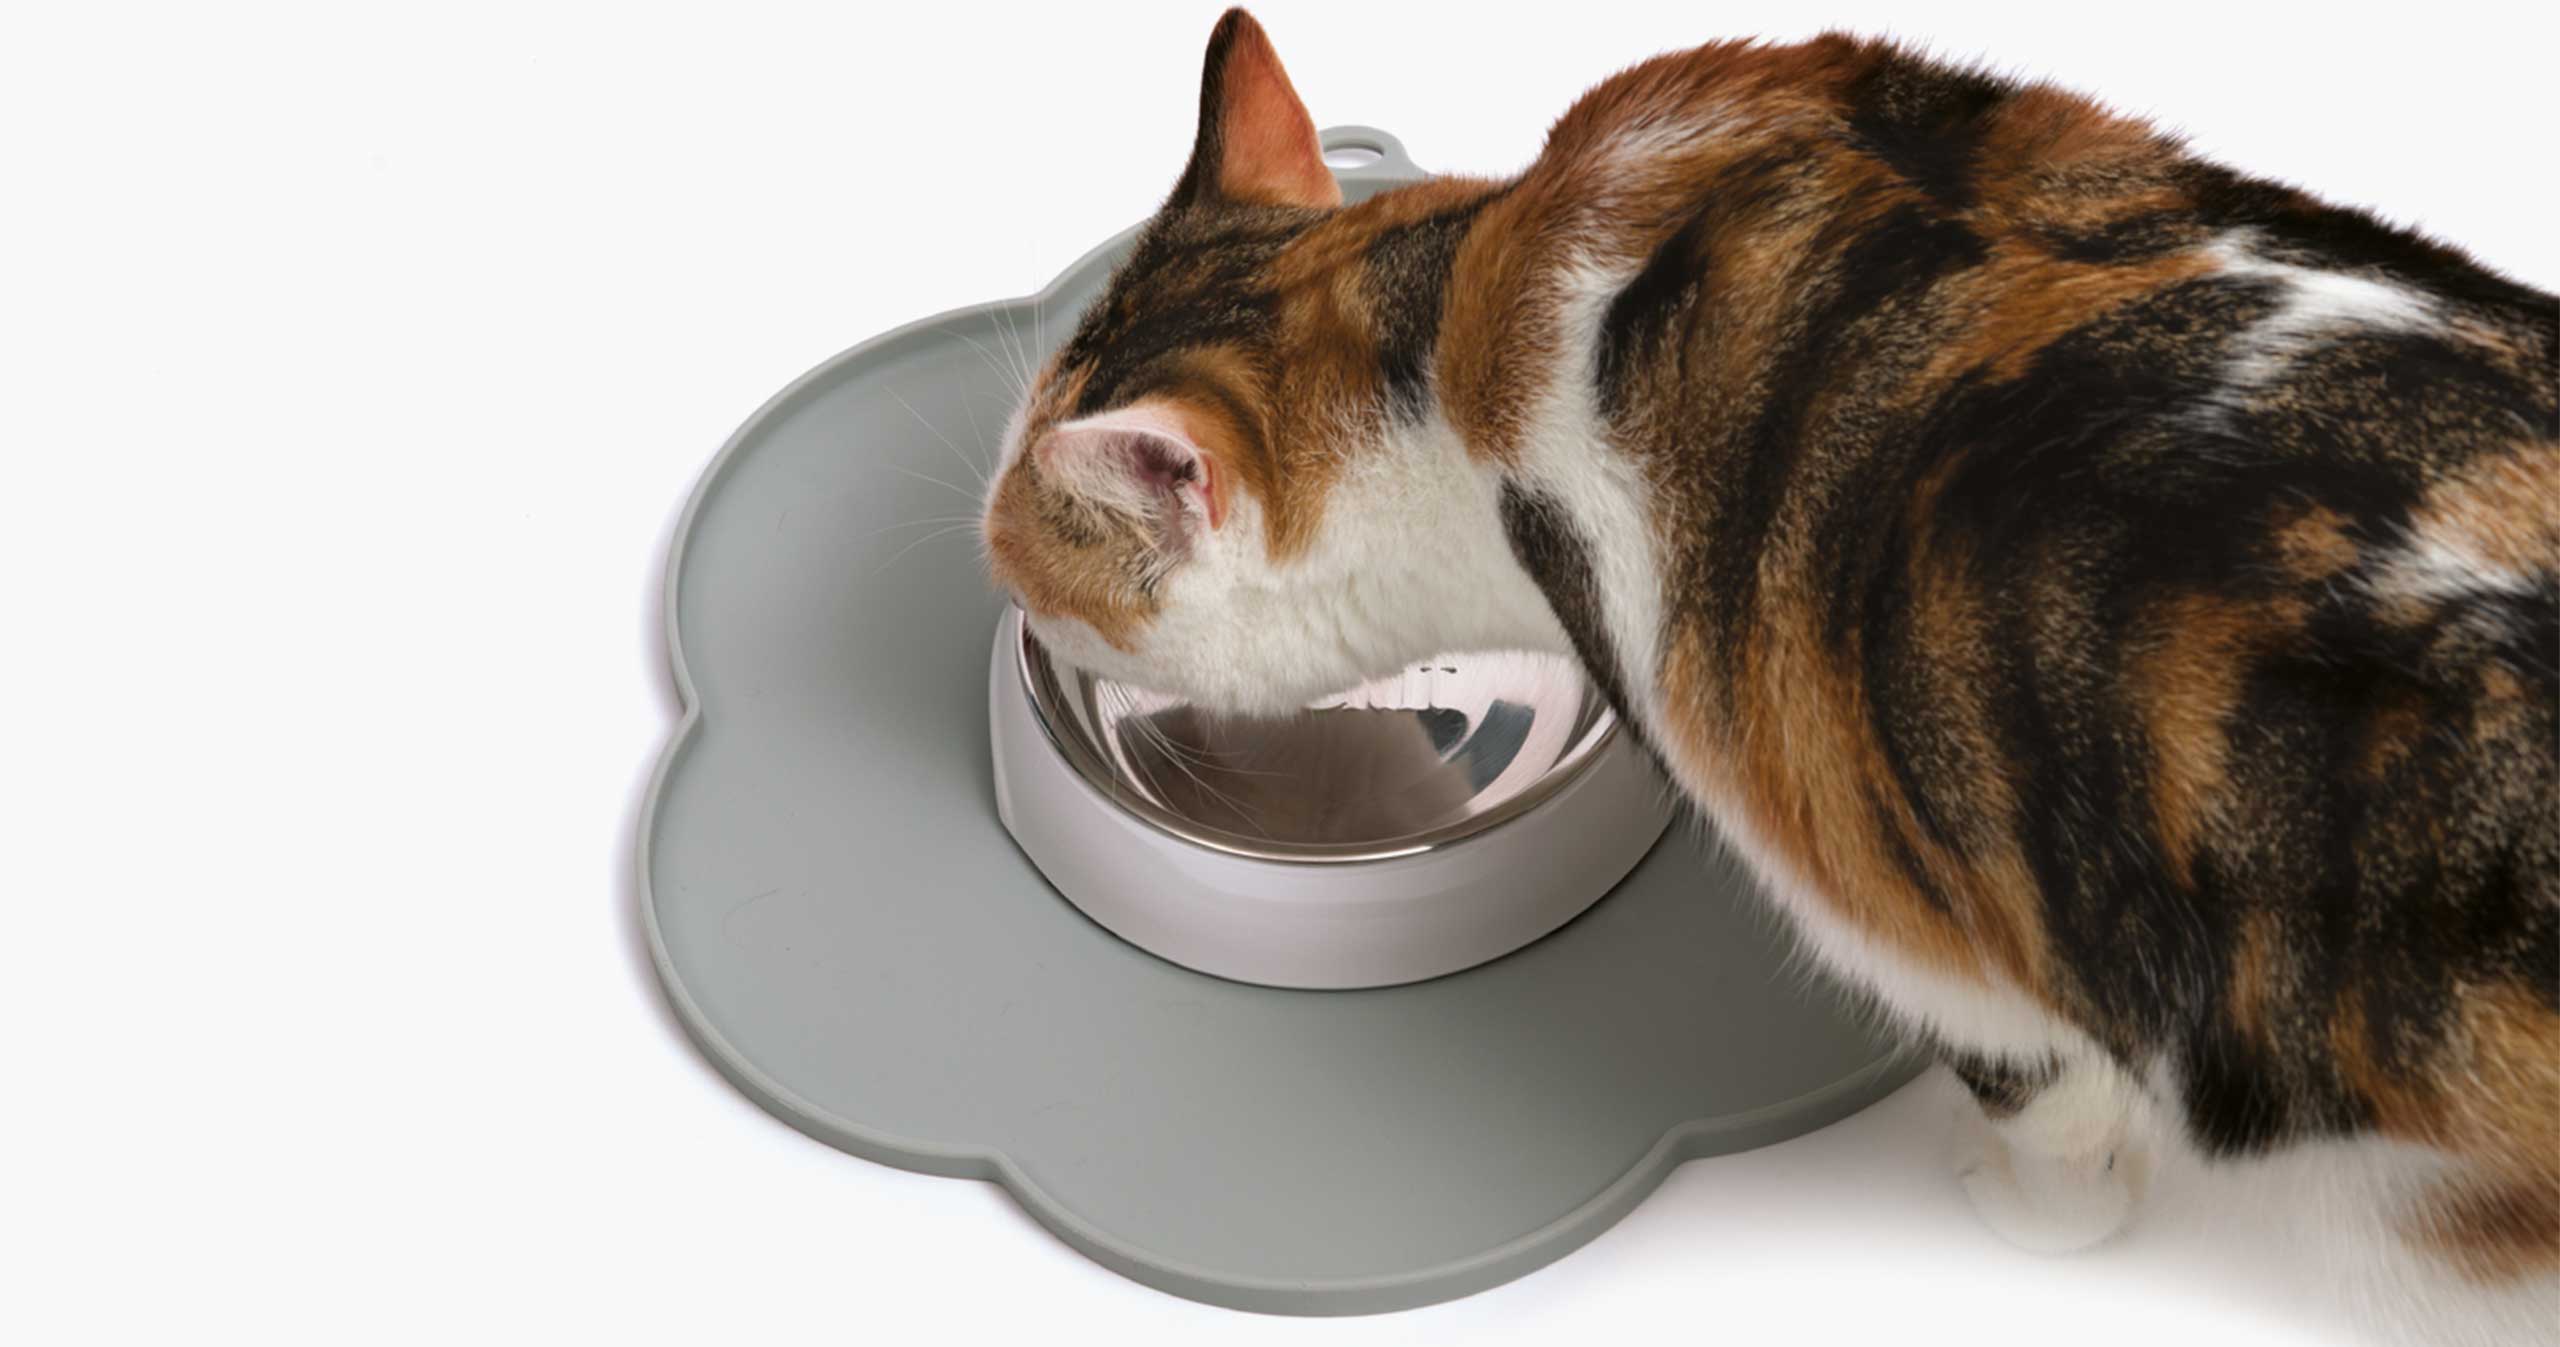 Grijze Flower Placemat met kat die eet uit voerkom